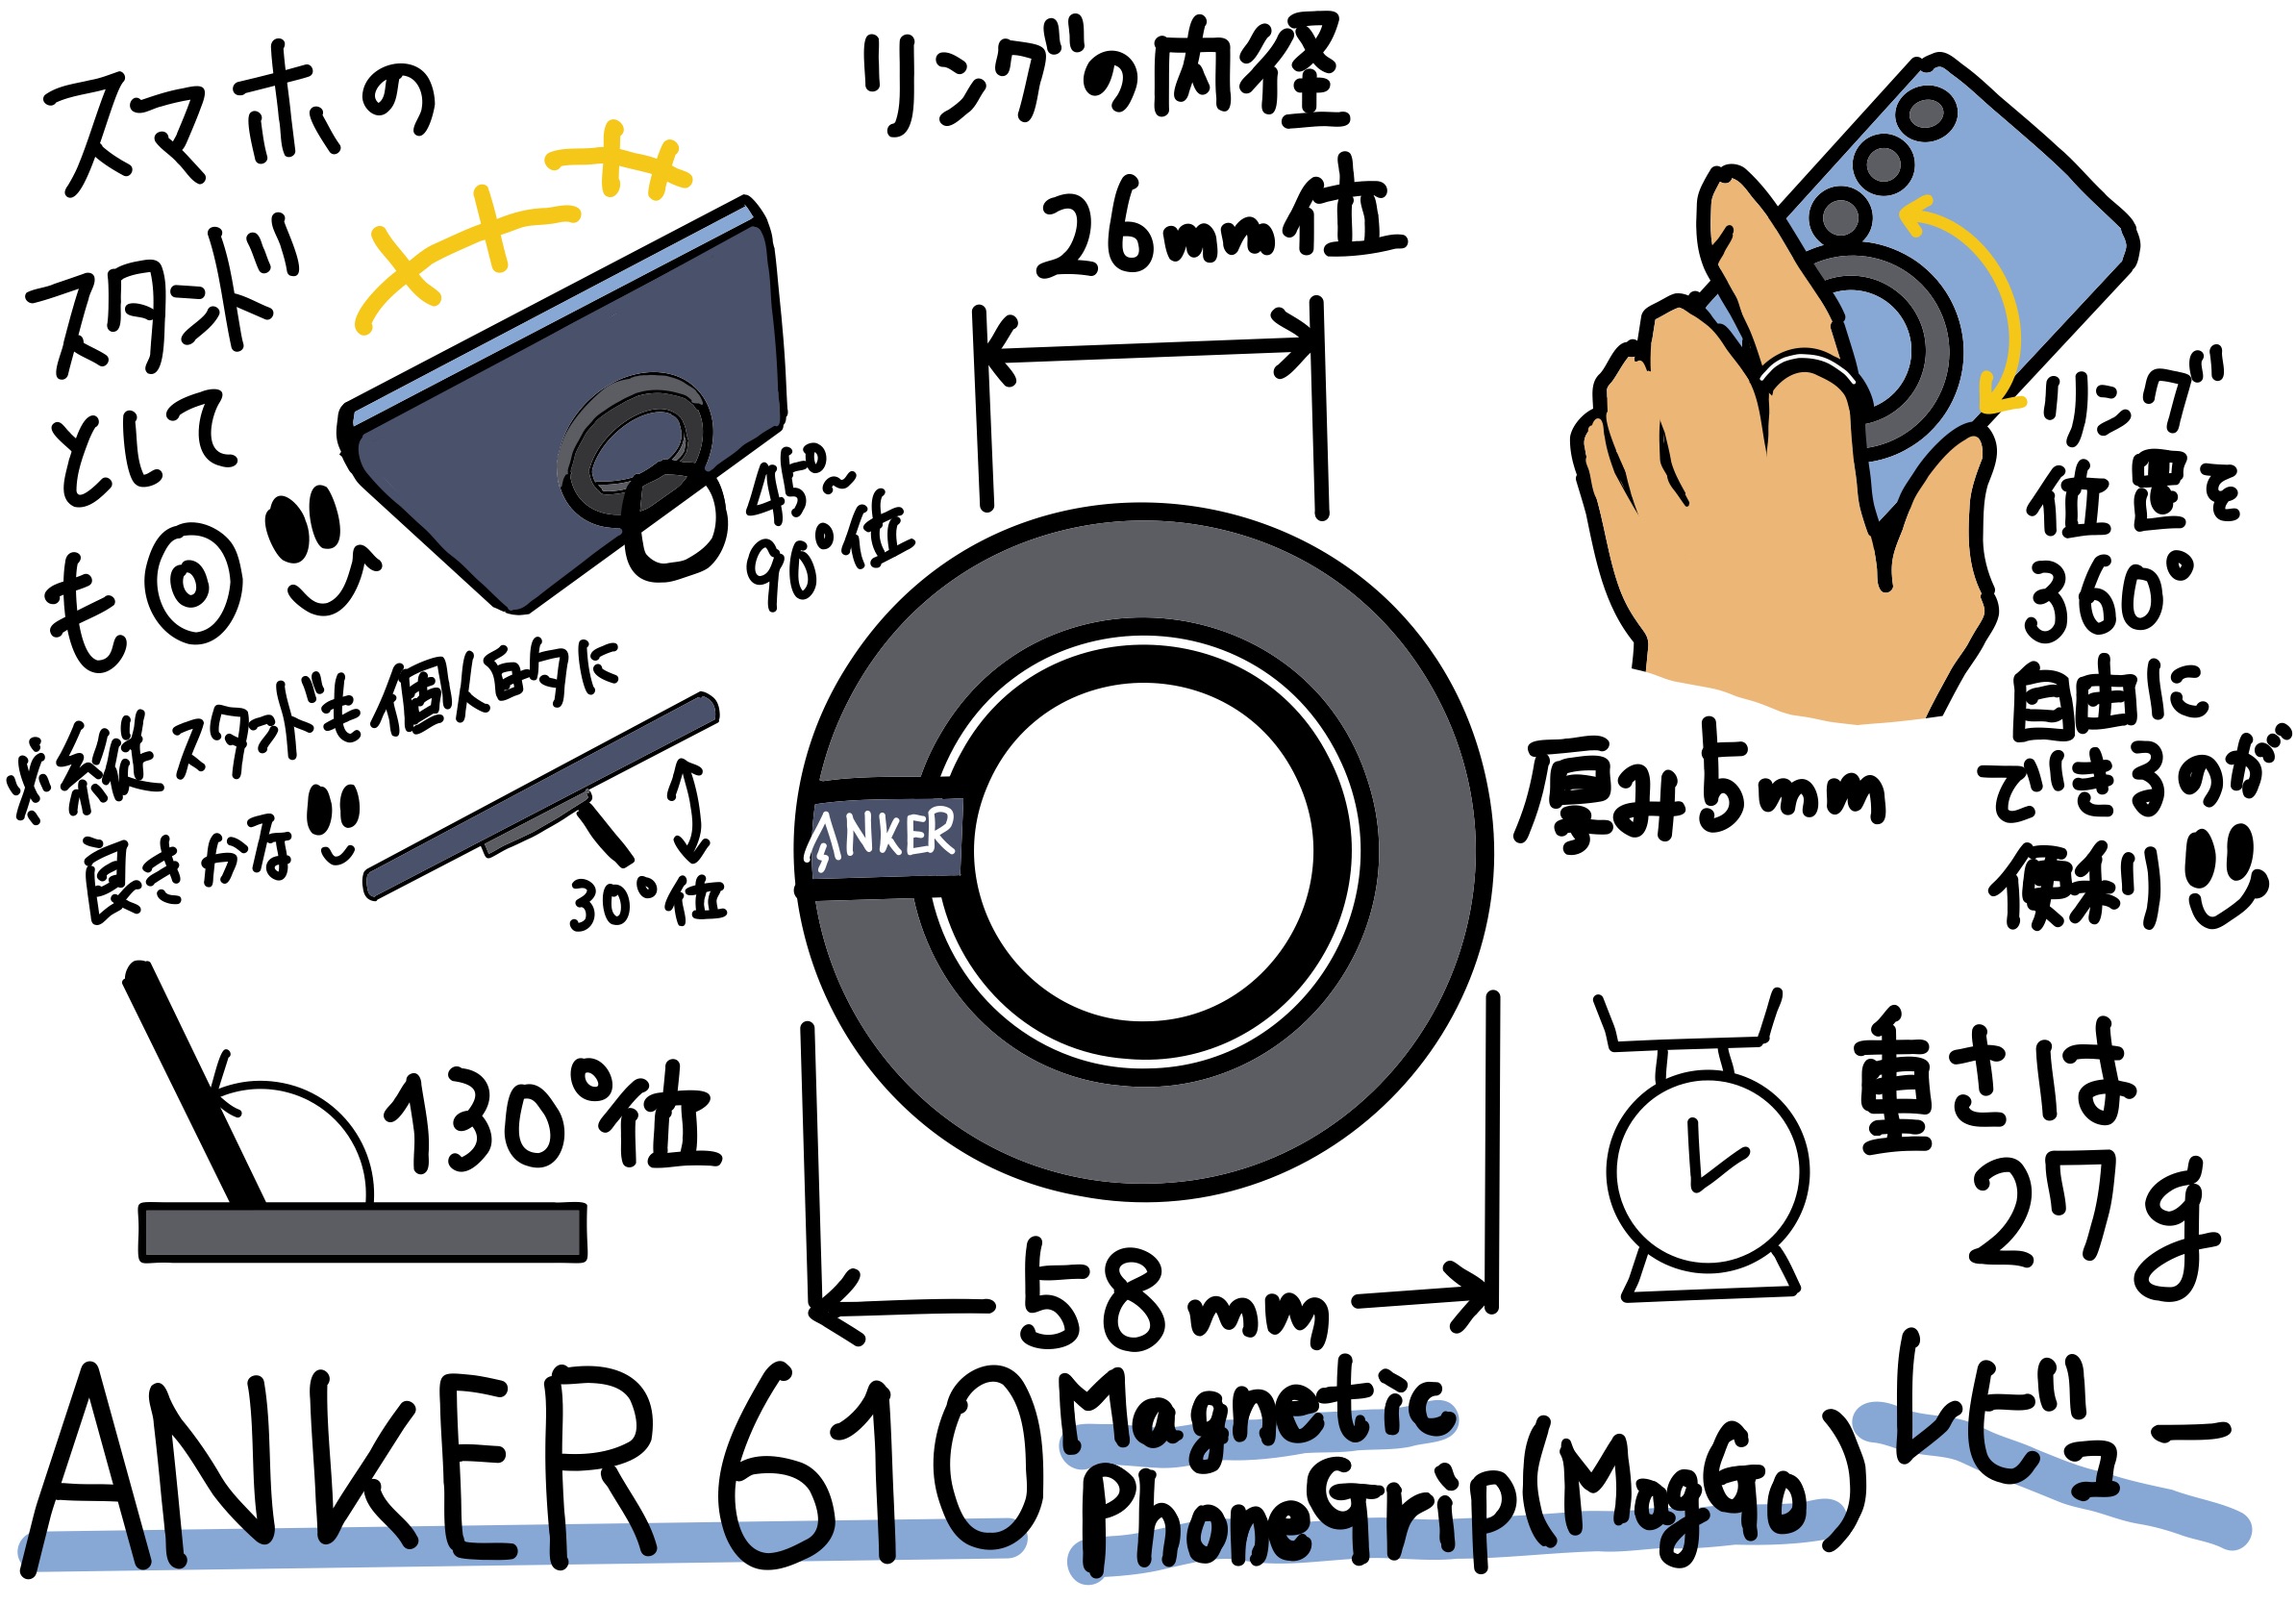 Anker 610 Magnetic Phone Grip (MagGo) を Galaxy S24 で使ってみることに